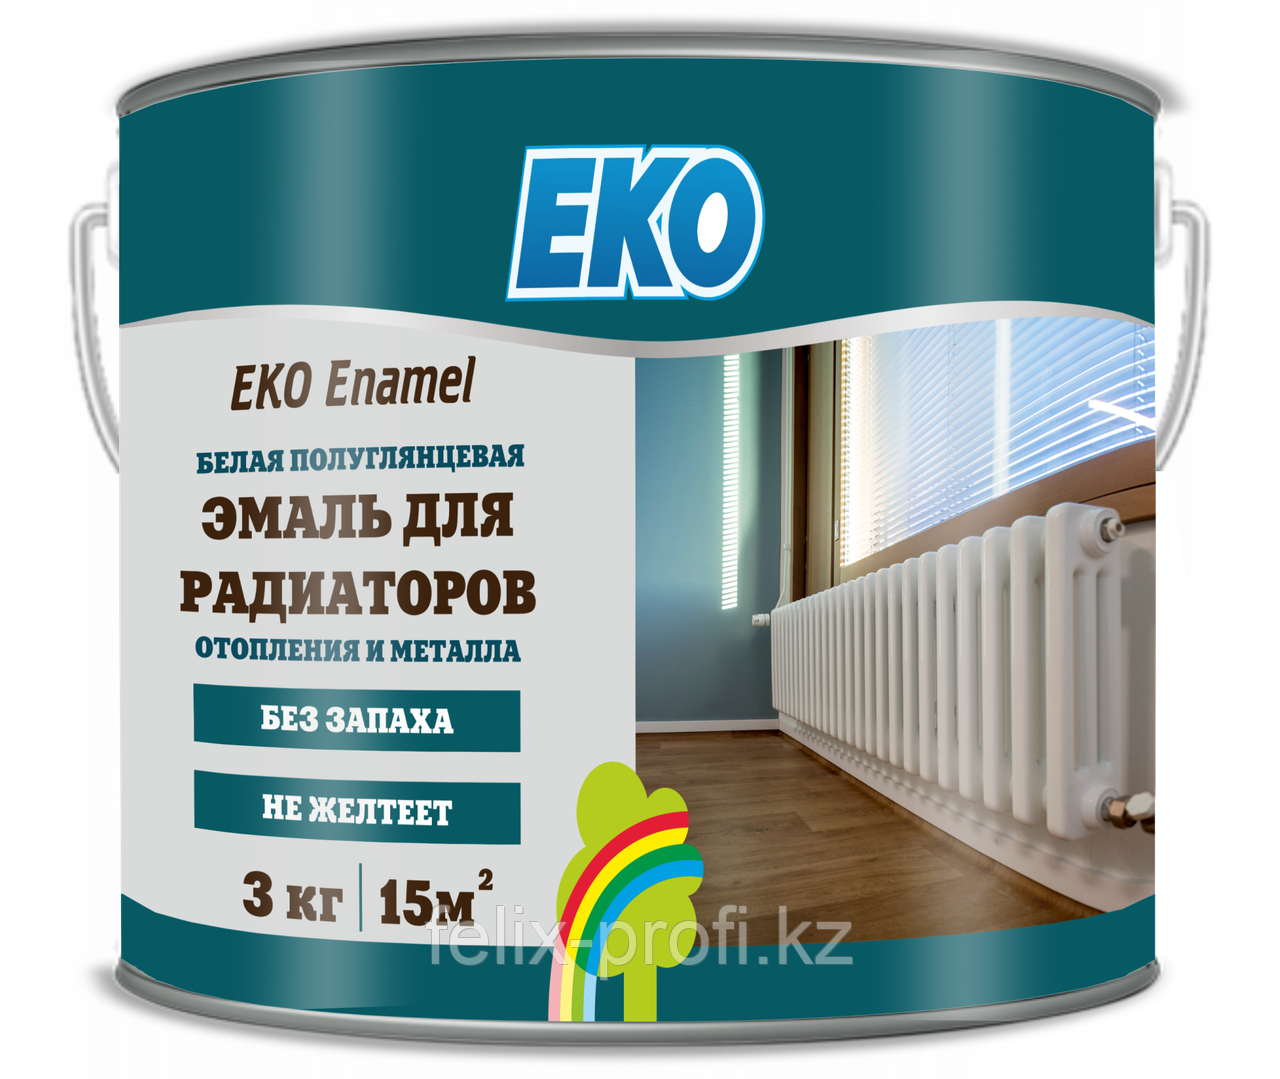 EKO ENAMEL, эмаль для метала и радиаторов отопления  (ПОЛУГЛЯНЦЕВАЯ) 2 кг.